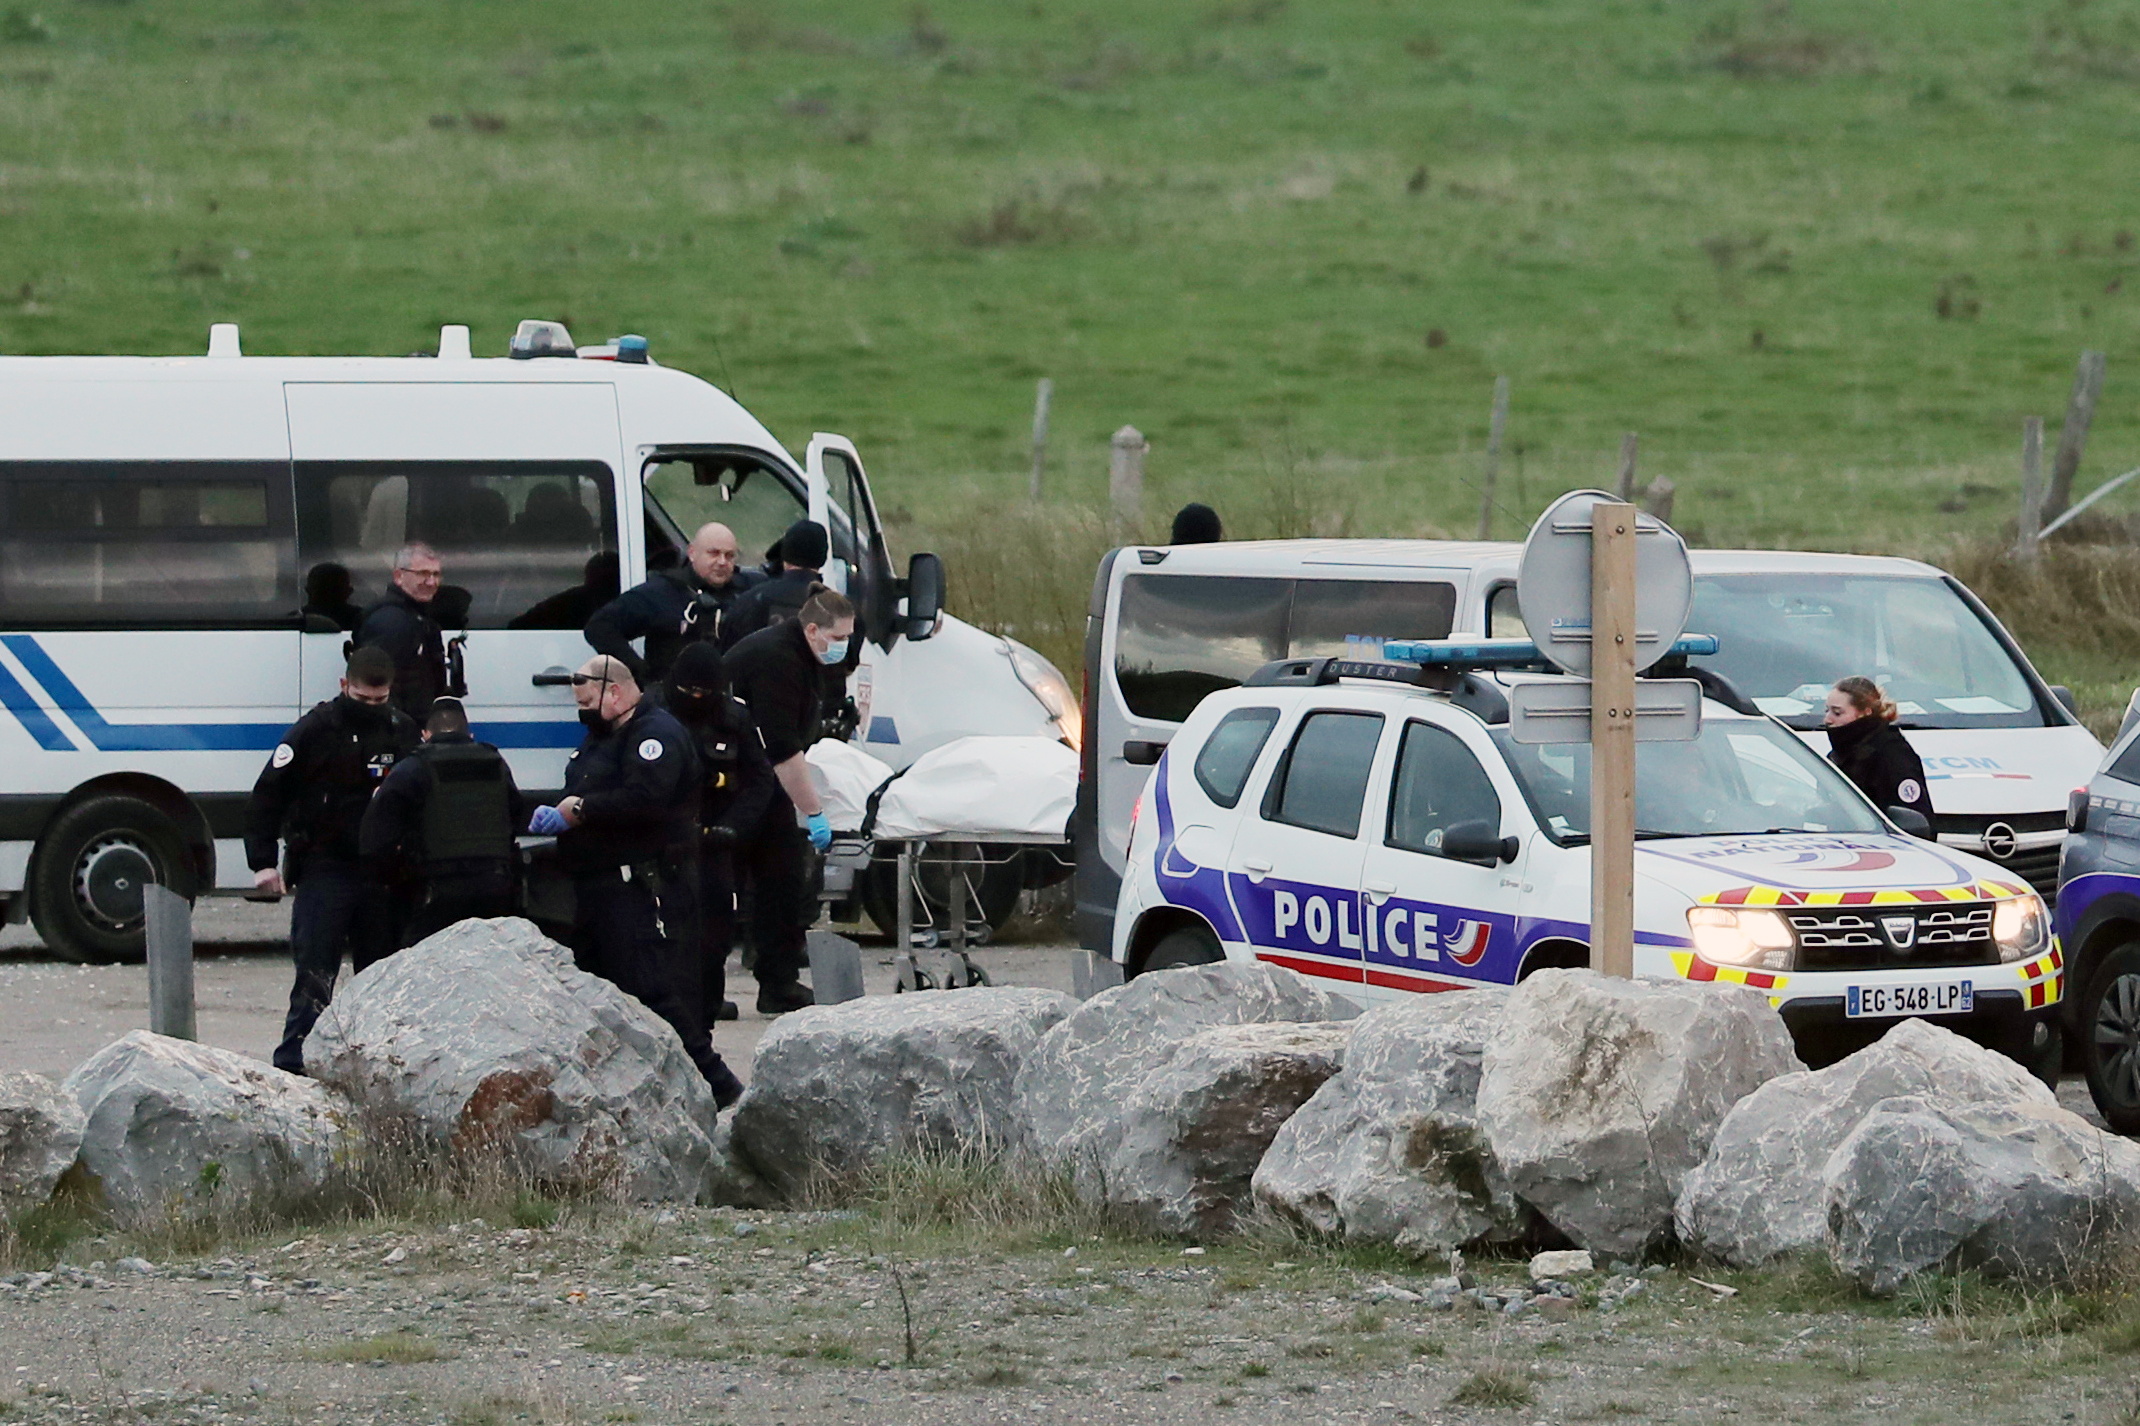 Atentado fallido en Francia: una mujer quiso arrollar a varios vehículos al grito de “Alá es grande”  